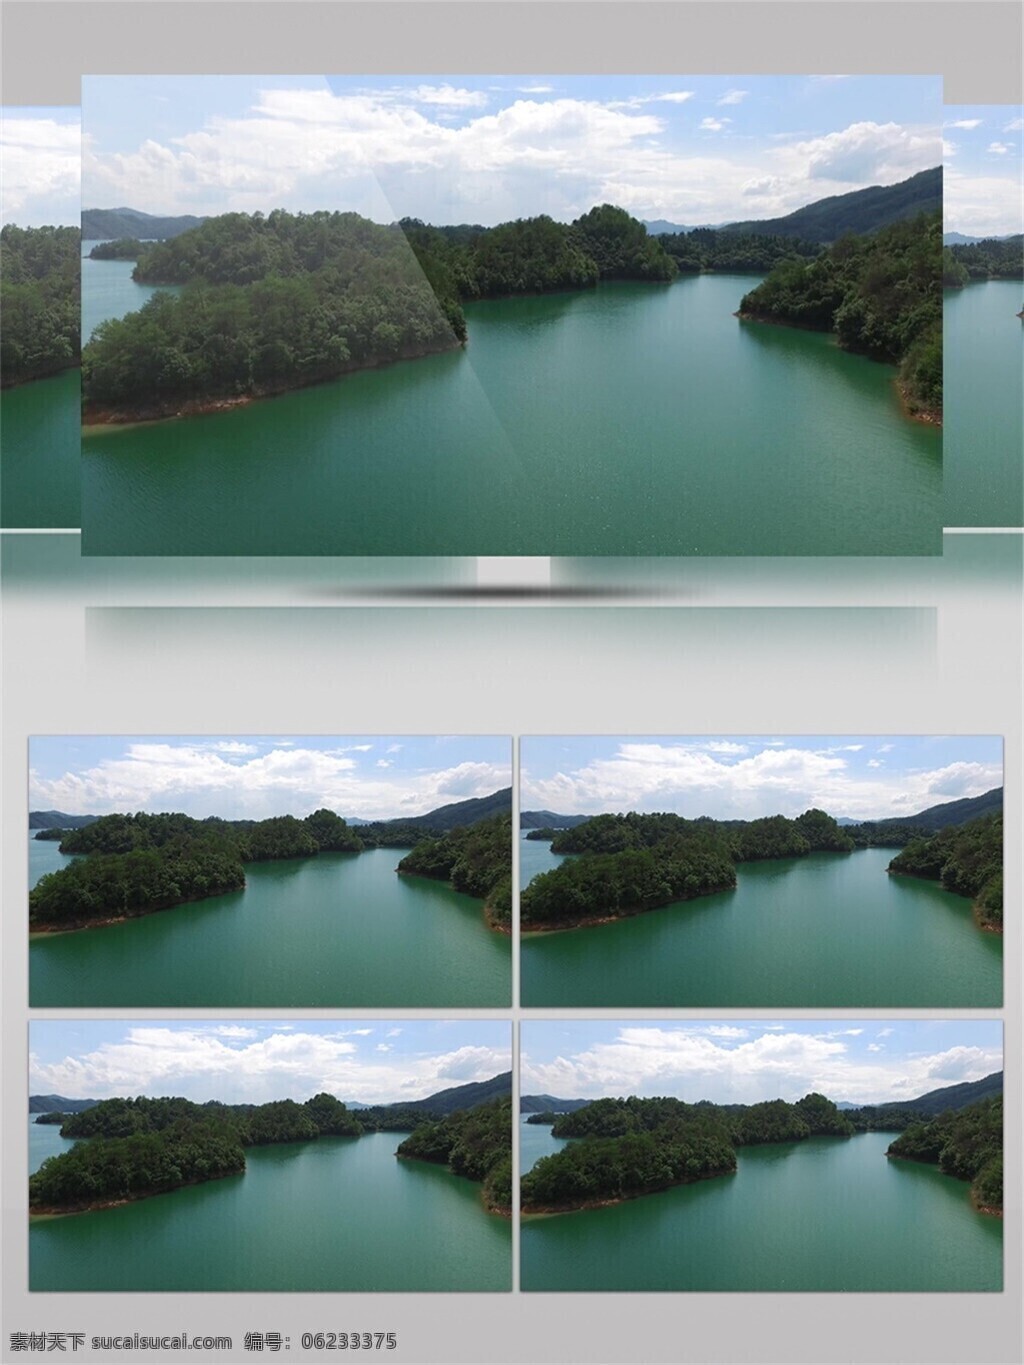 中国 大自然 自然风光 视频 音效 植物 绿色 唯美 山水 视频素材 壮观 视频音效